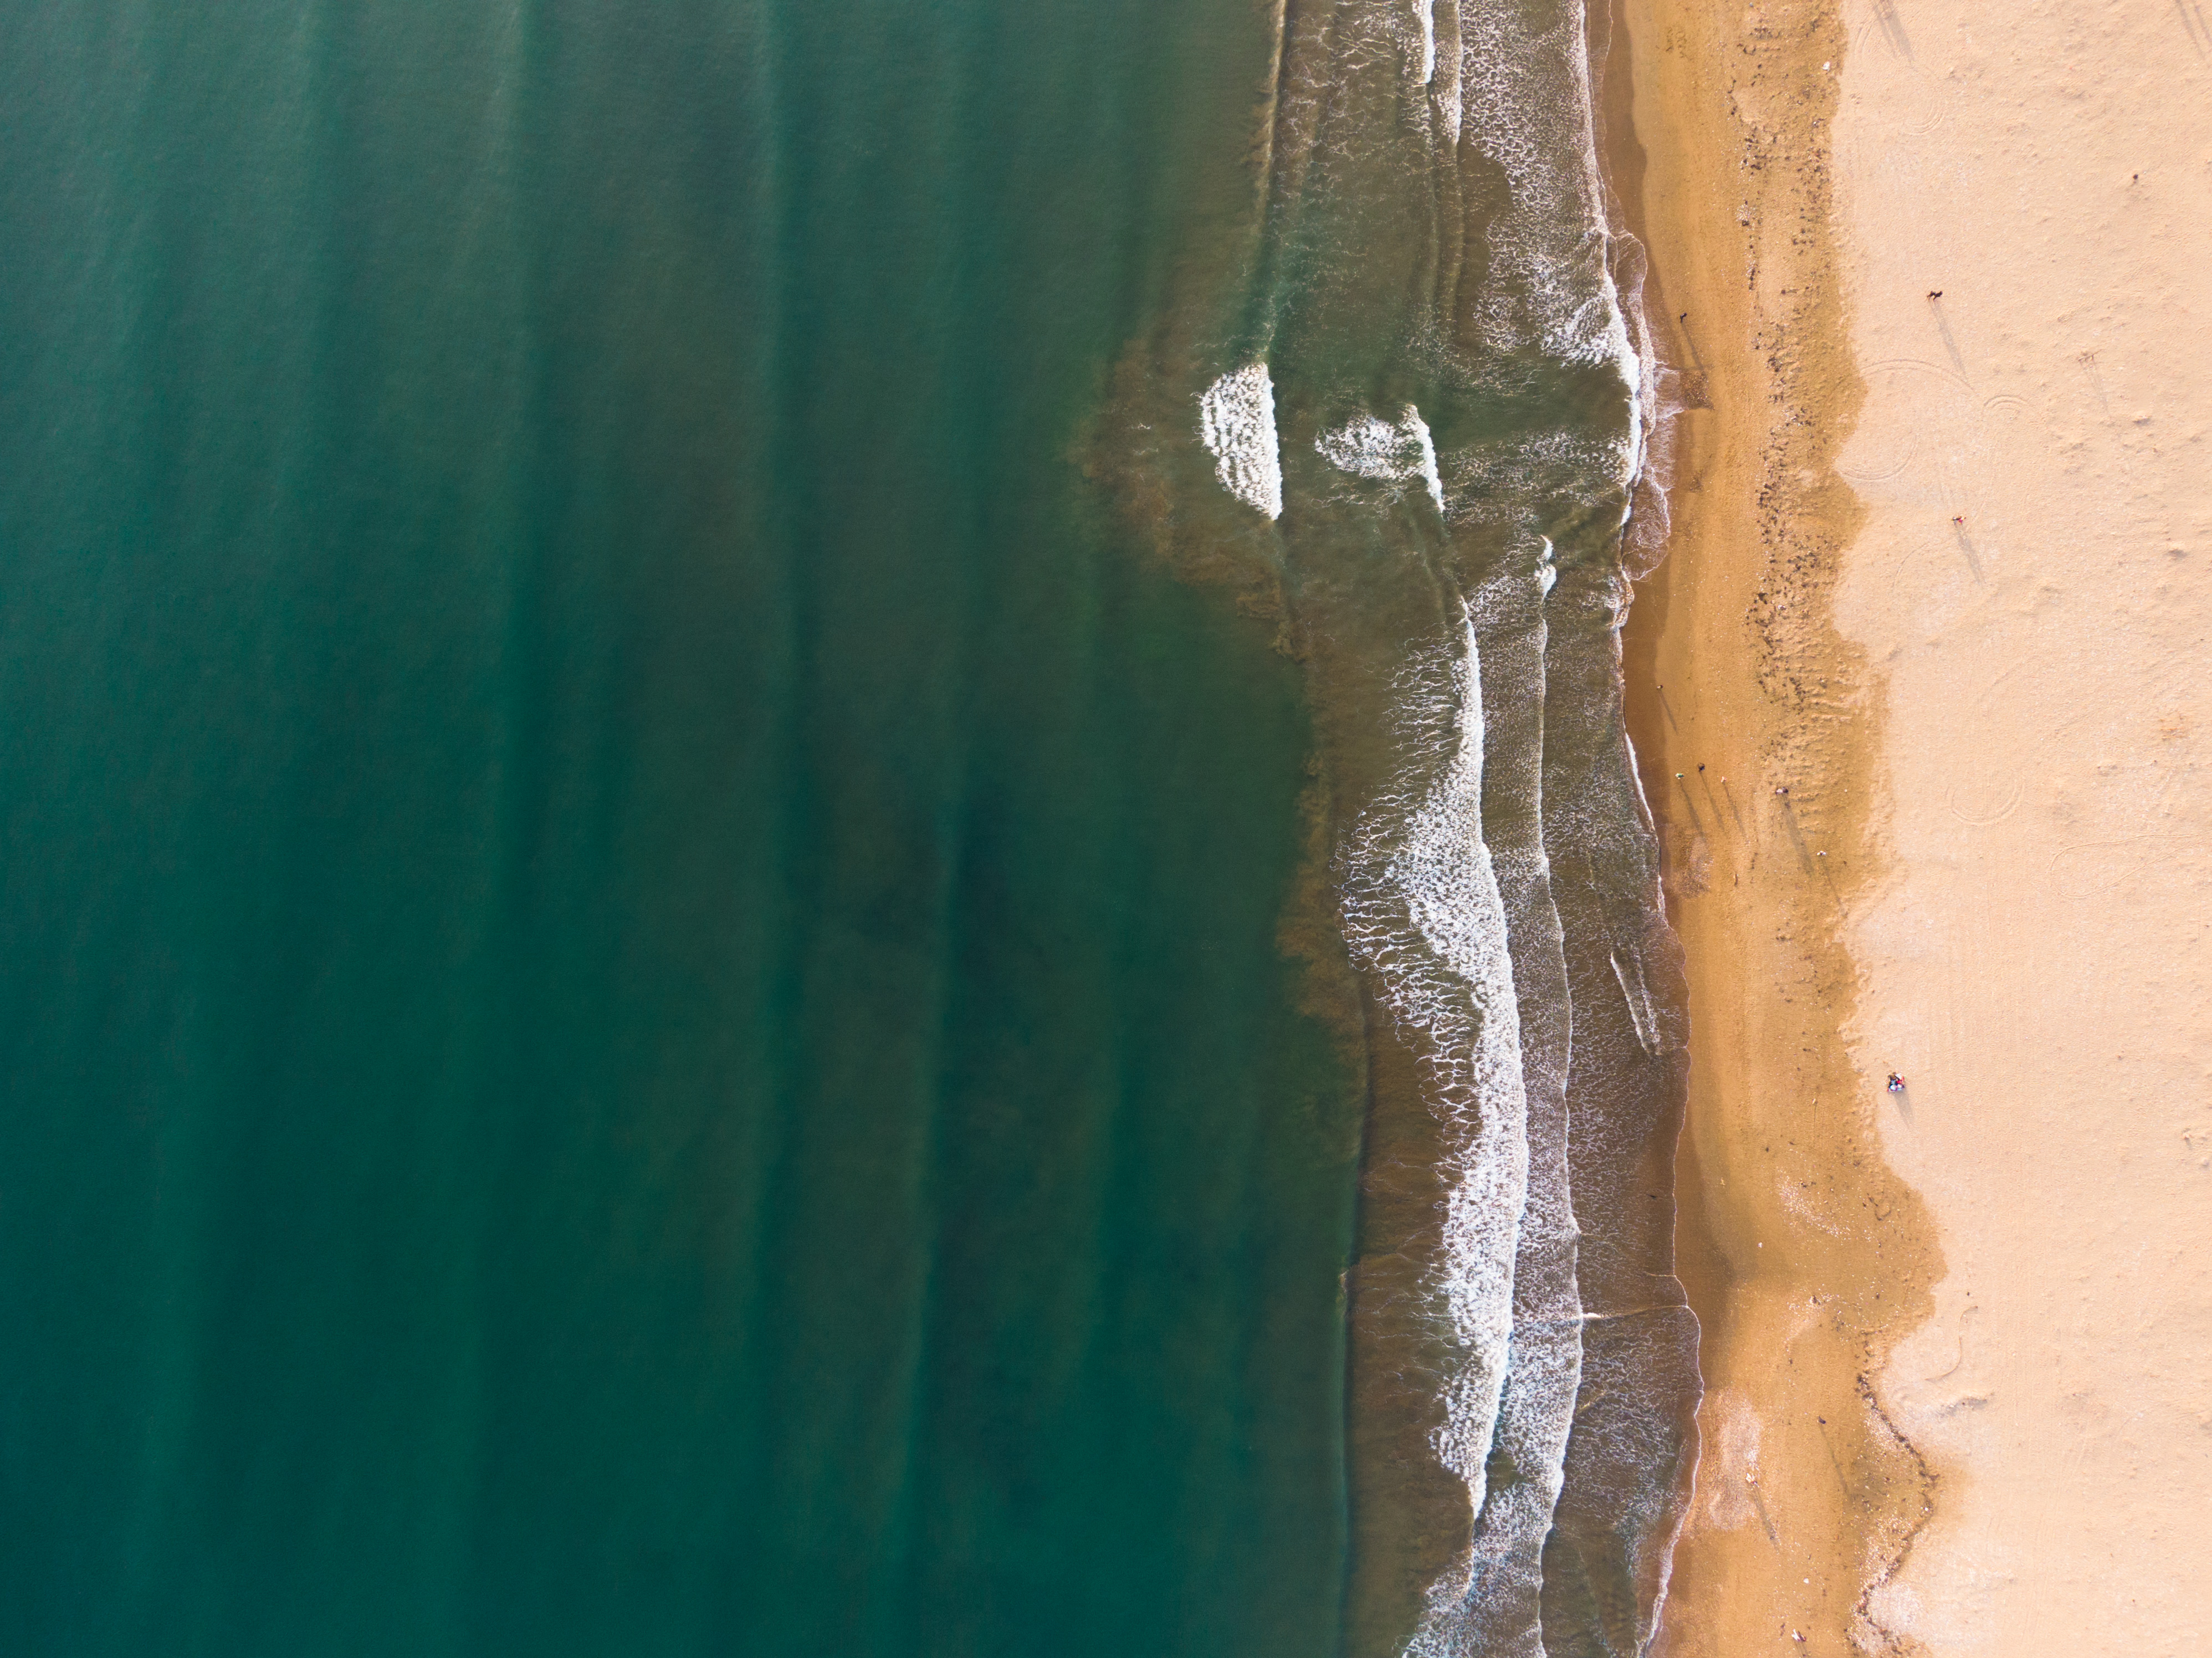 Landscape Drone Photo Seashore 3992x2992